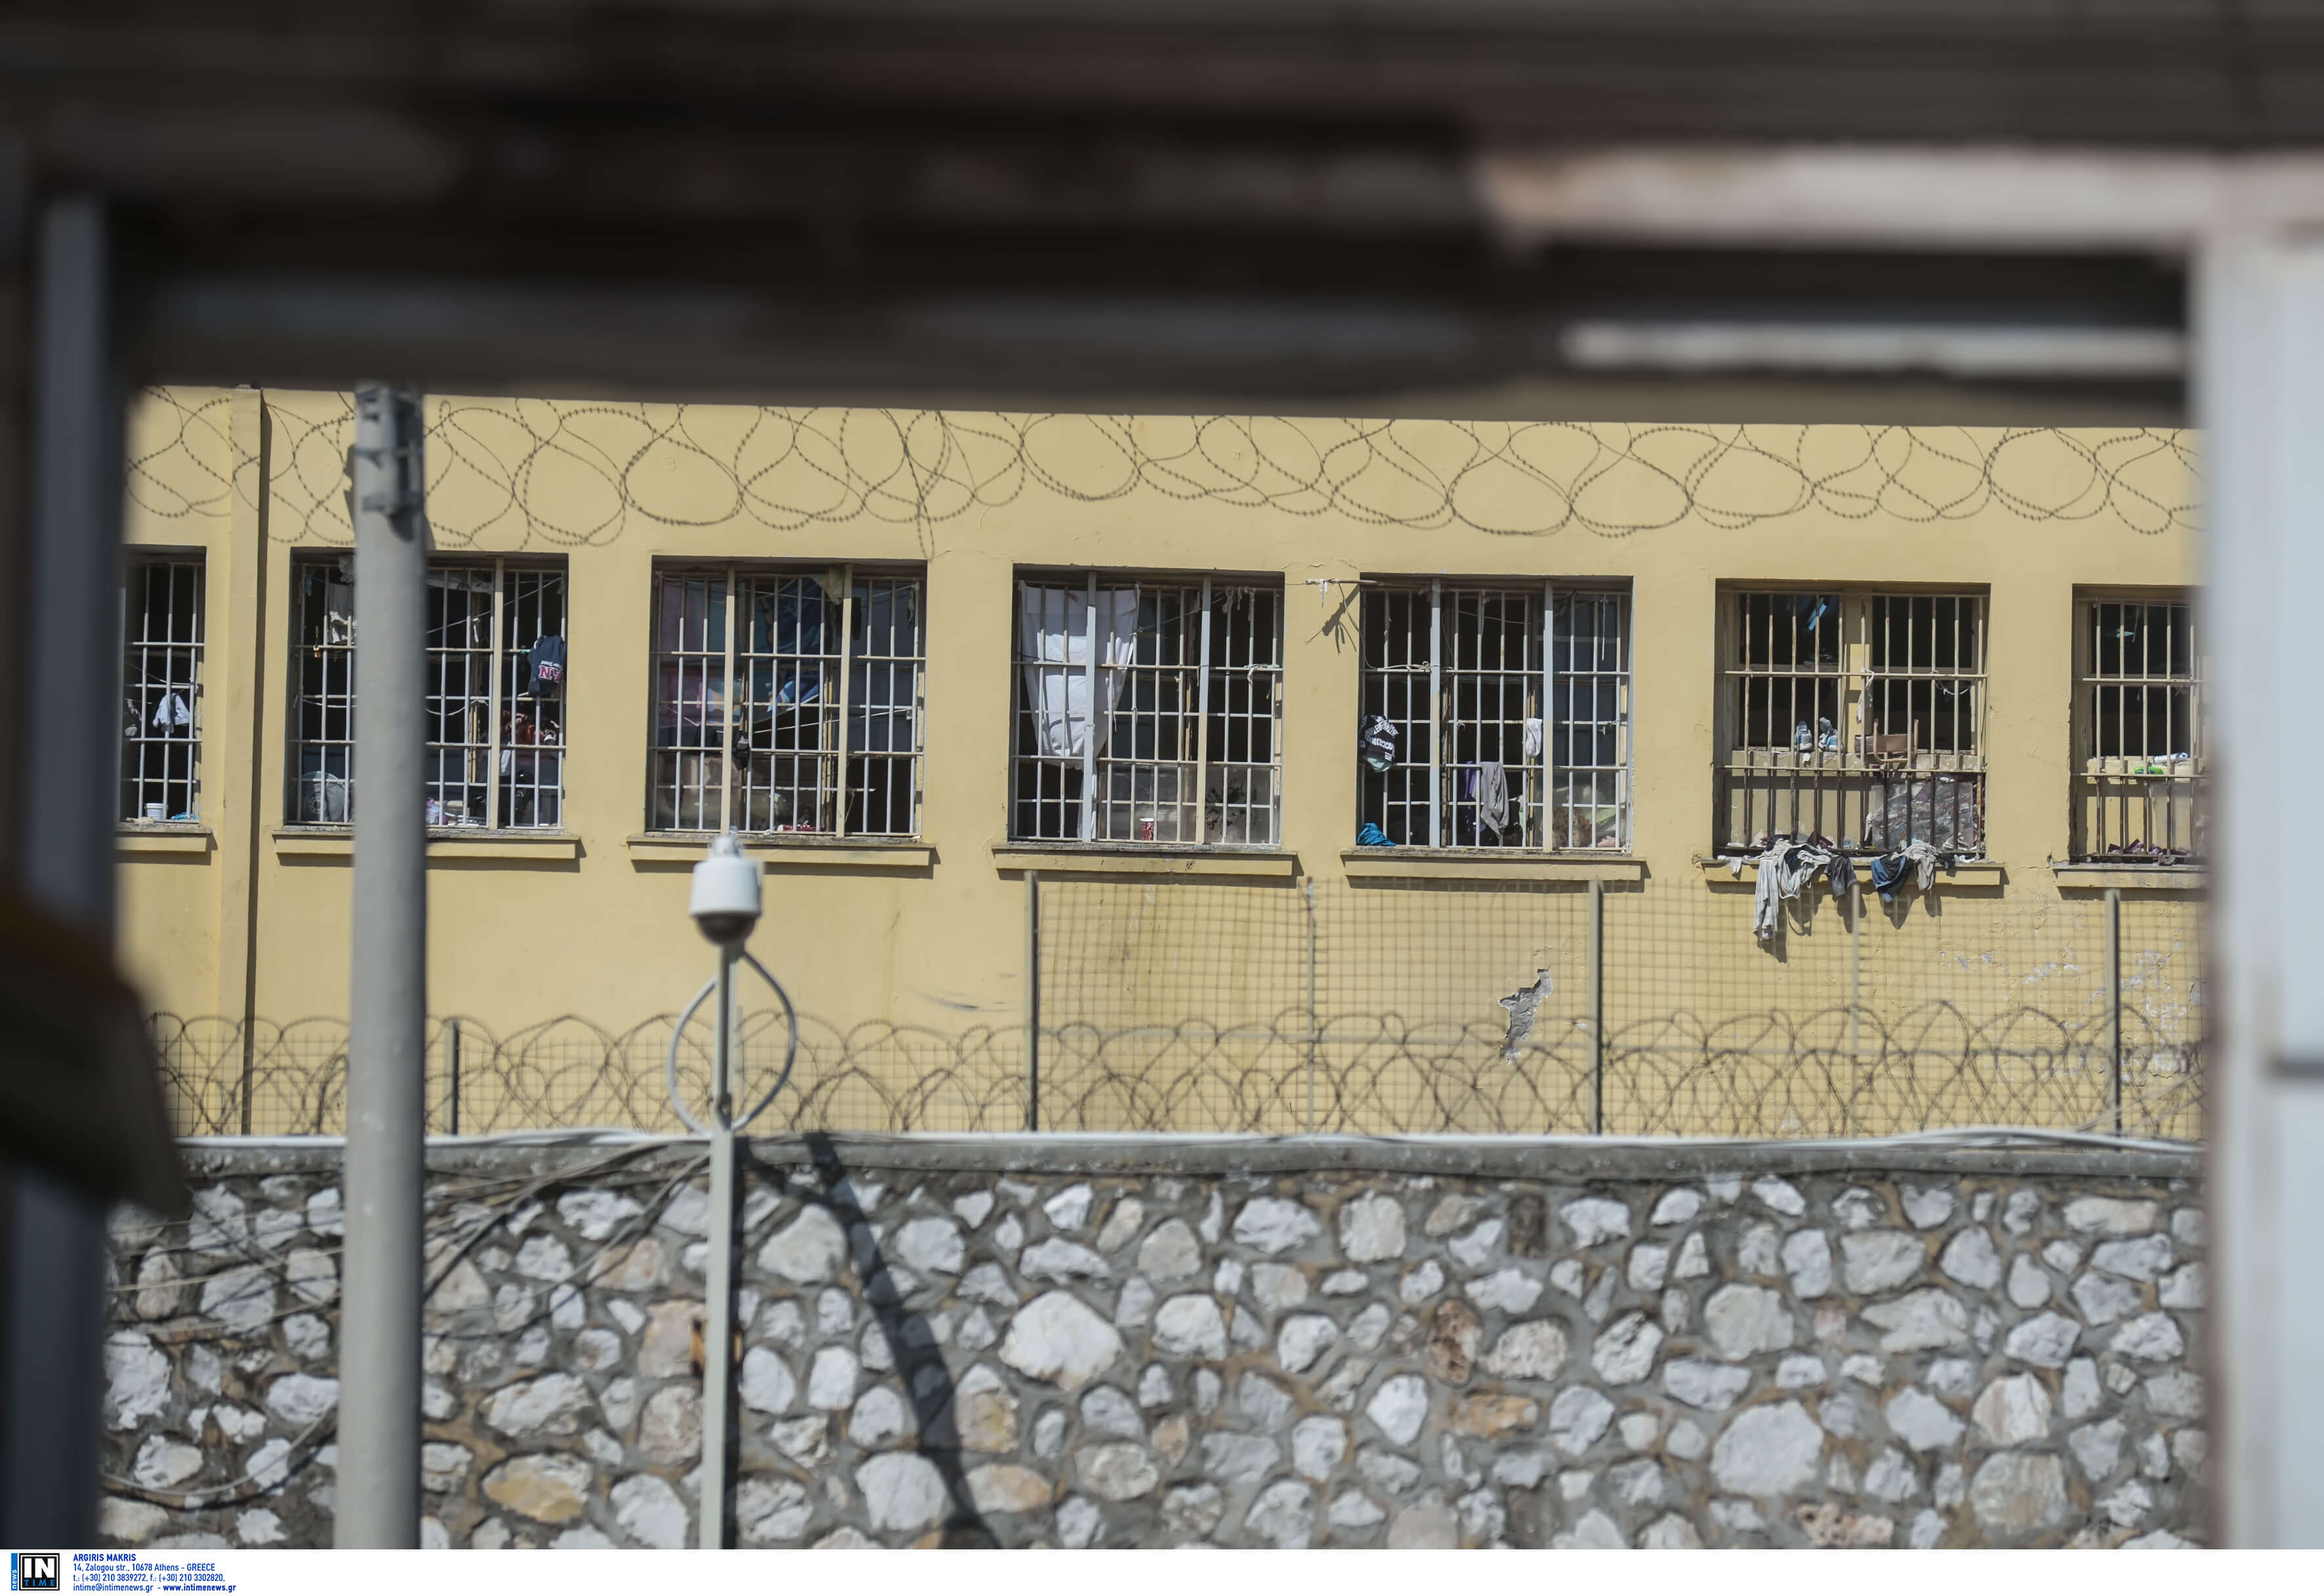 Ηράκλειο: Η φυλακή δεν εμπόδισε τη δράση του – Παρέμεινε εγκέφαλος και απαιτητικός [pics]